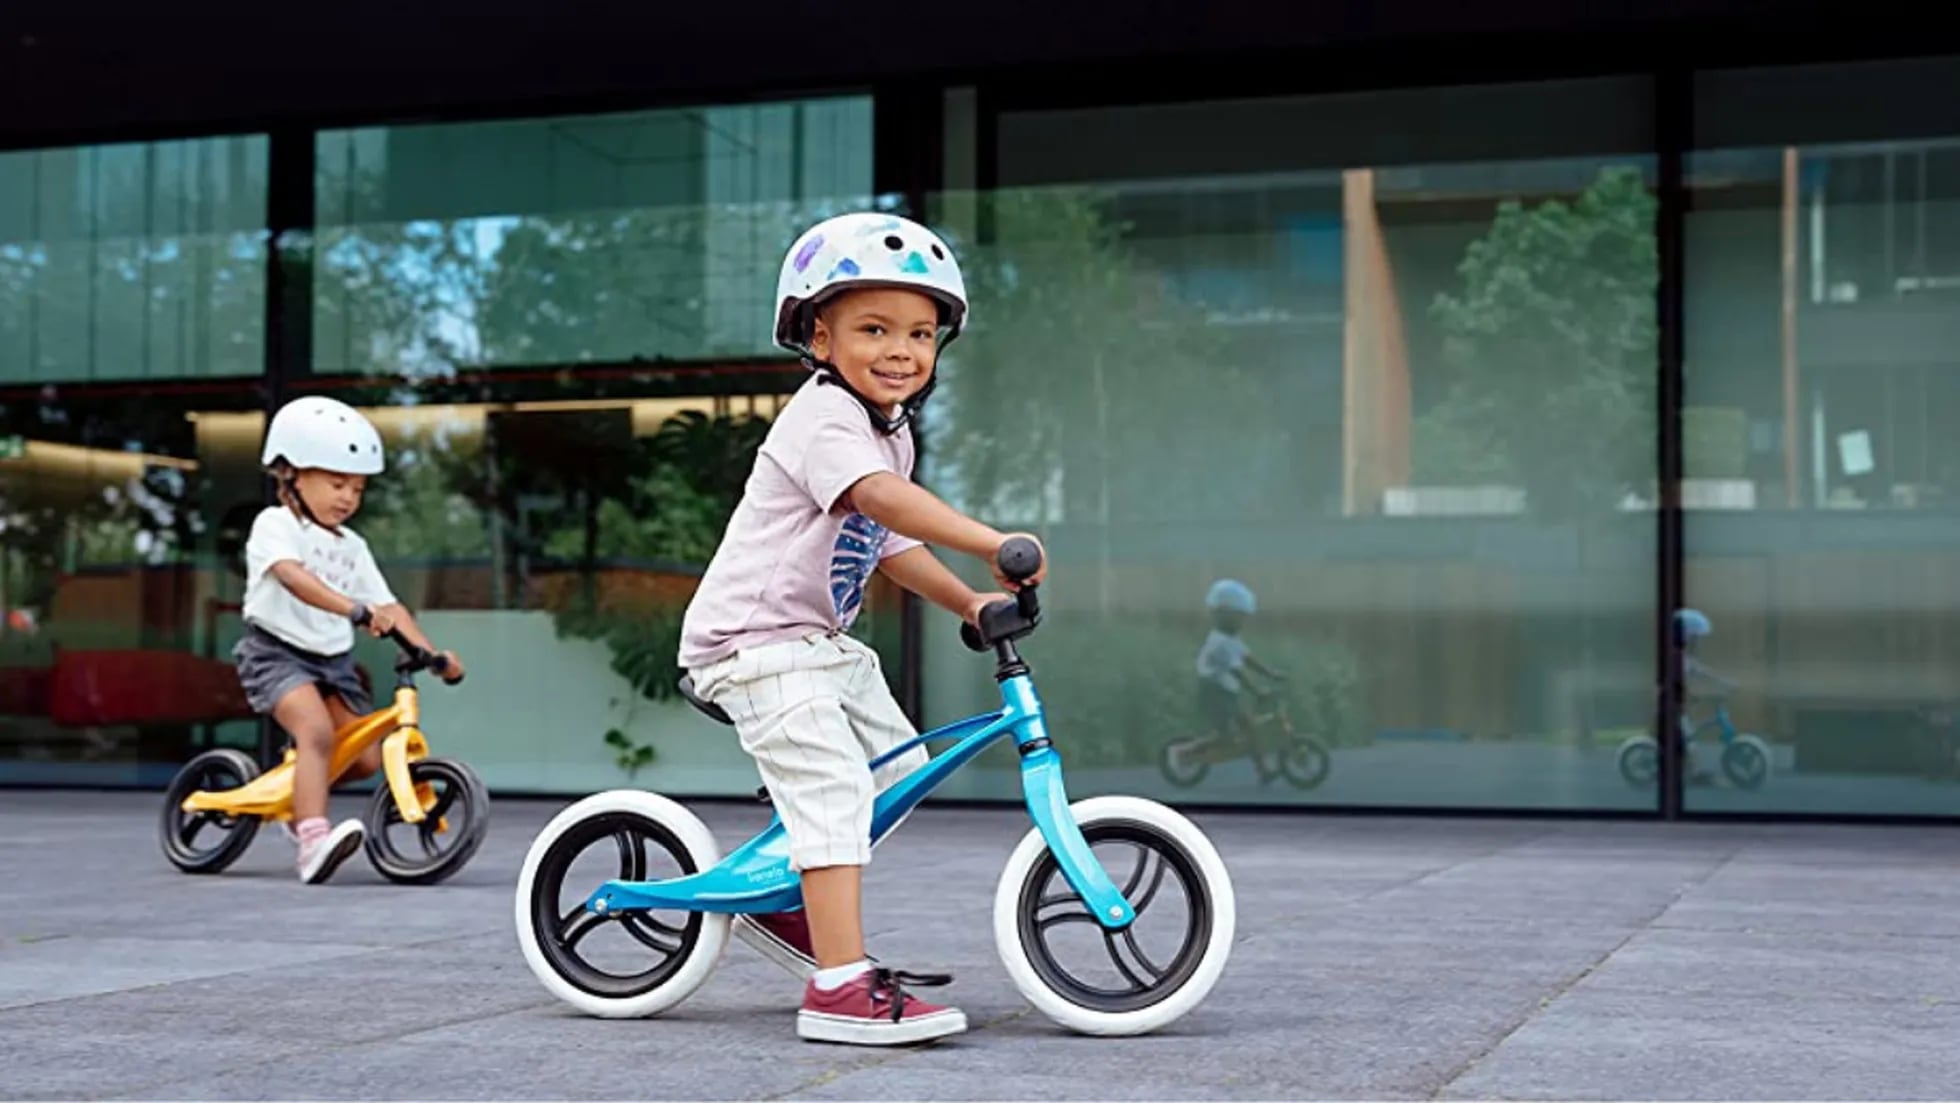 Sillas para niños bicicletas - compra online a los mejores precios